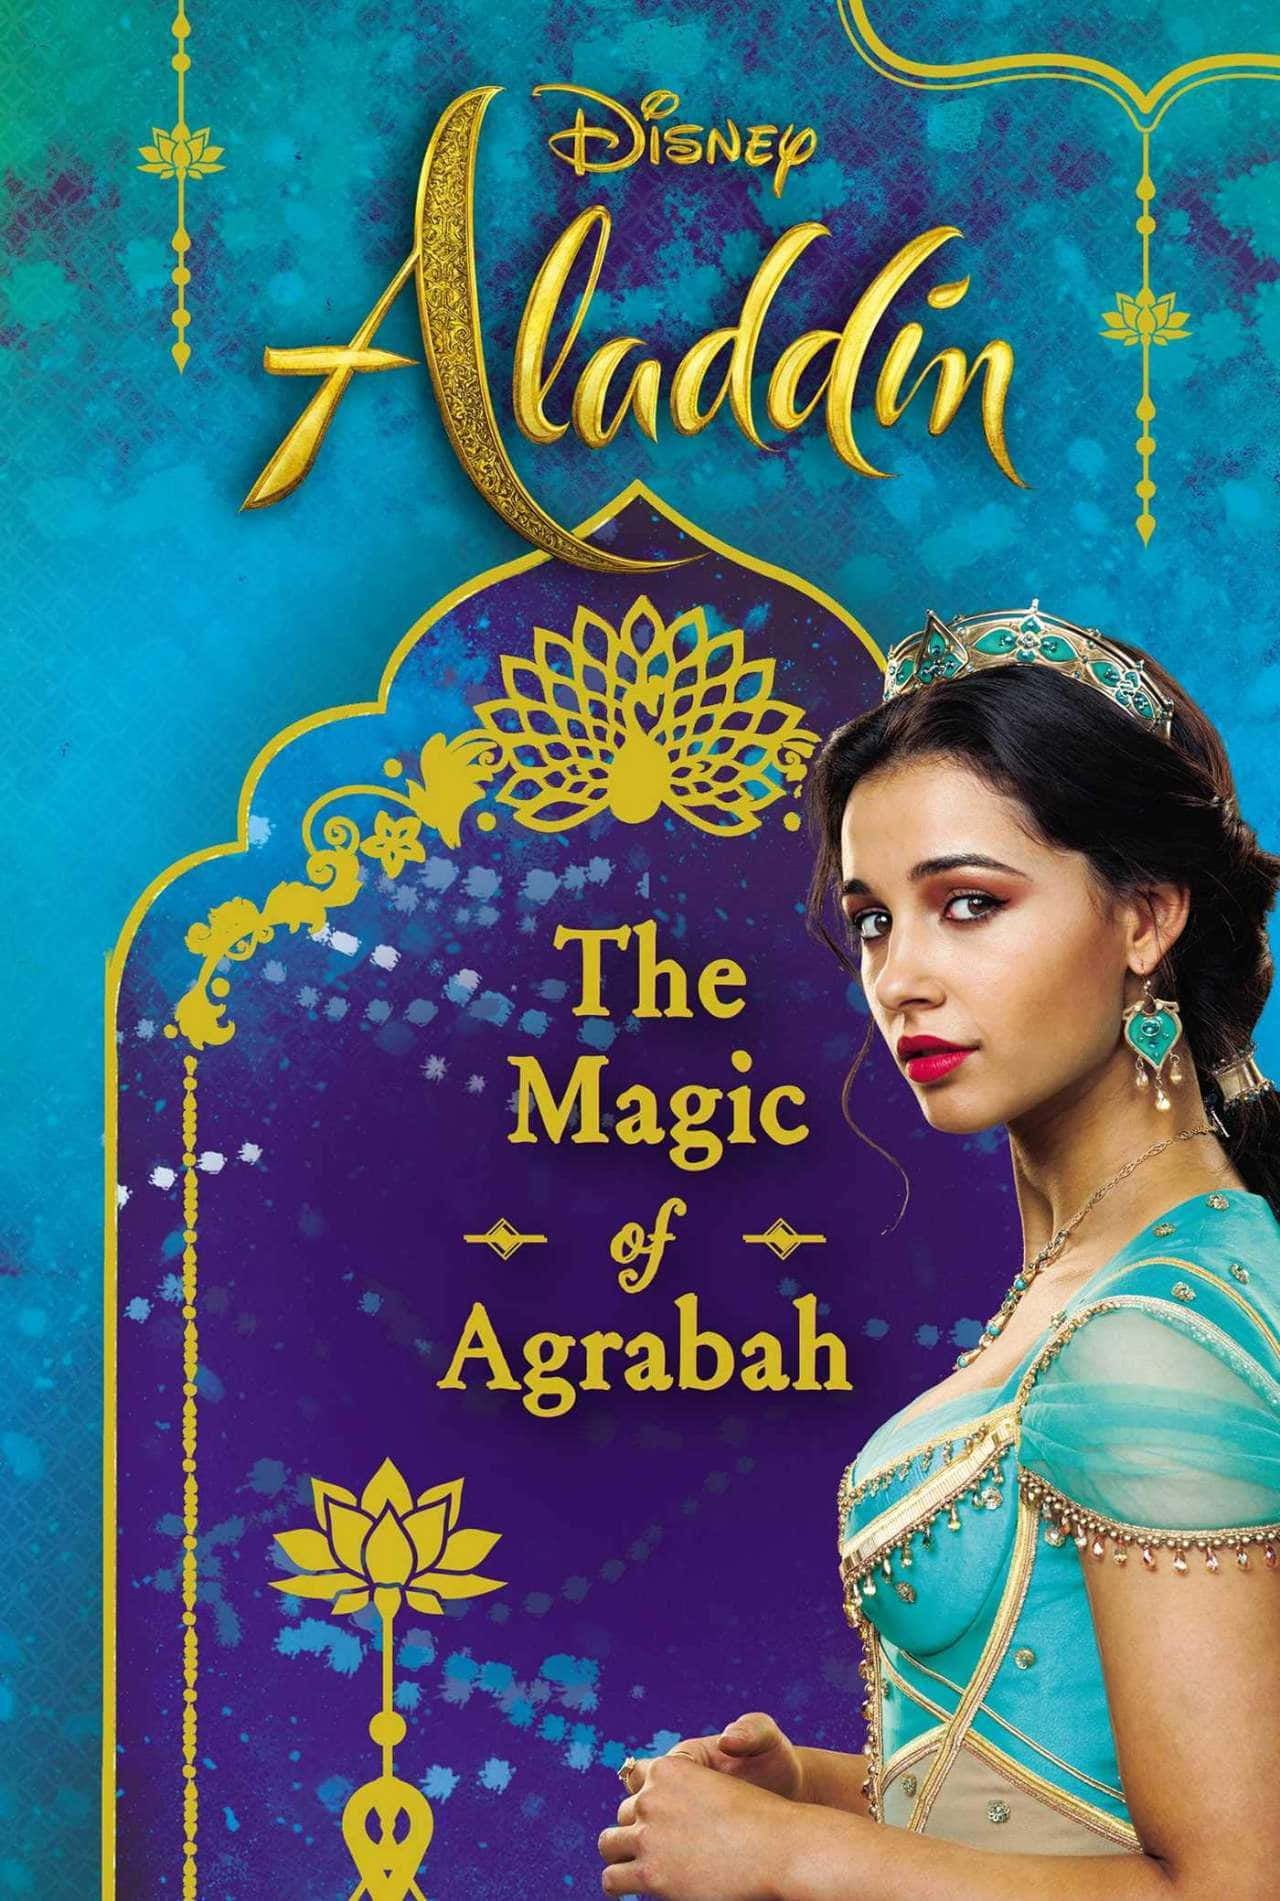 Dielegendären Und Beliebten Charaktere Aladdin Und Prinzessin Jasmin Genießen Einen Zauberhaften Abend, In Dem Ihr Wunsch Wahr Geworden Ist.